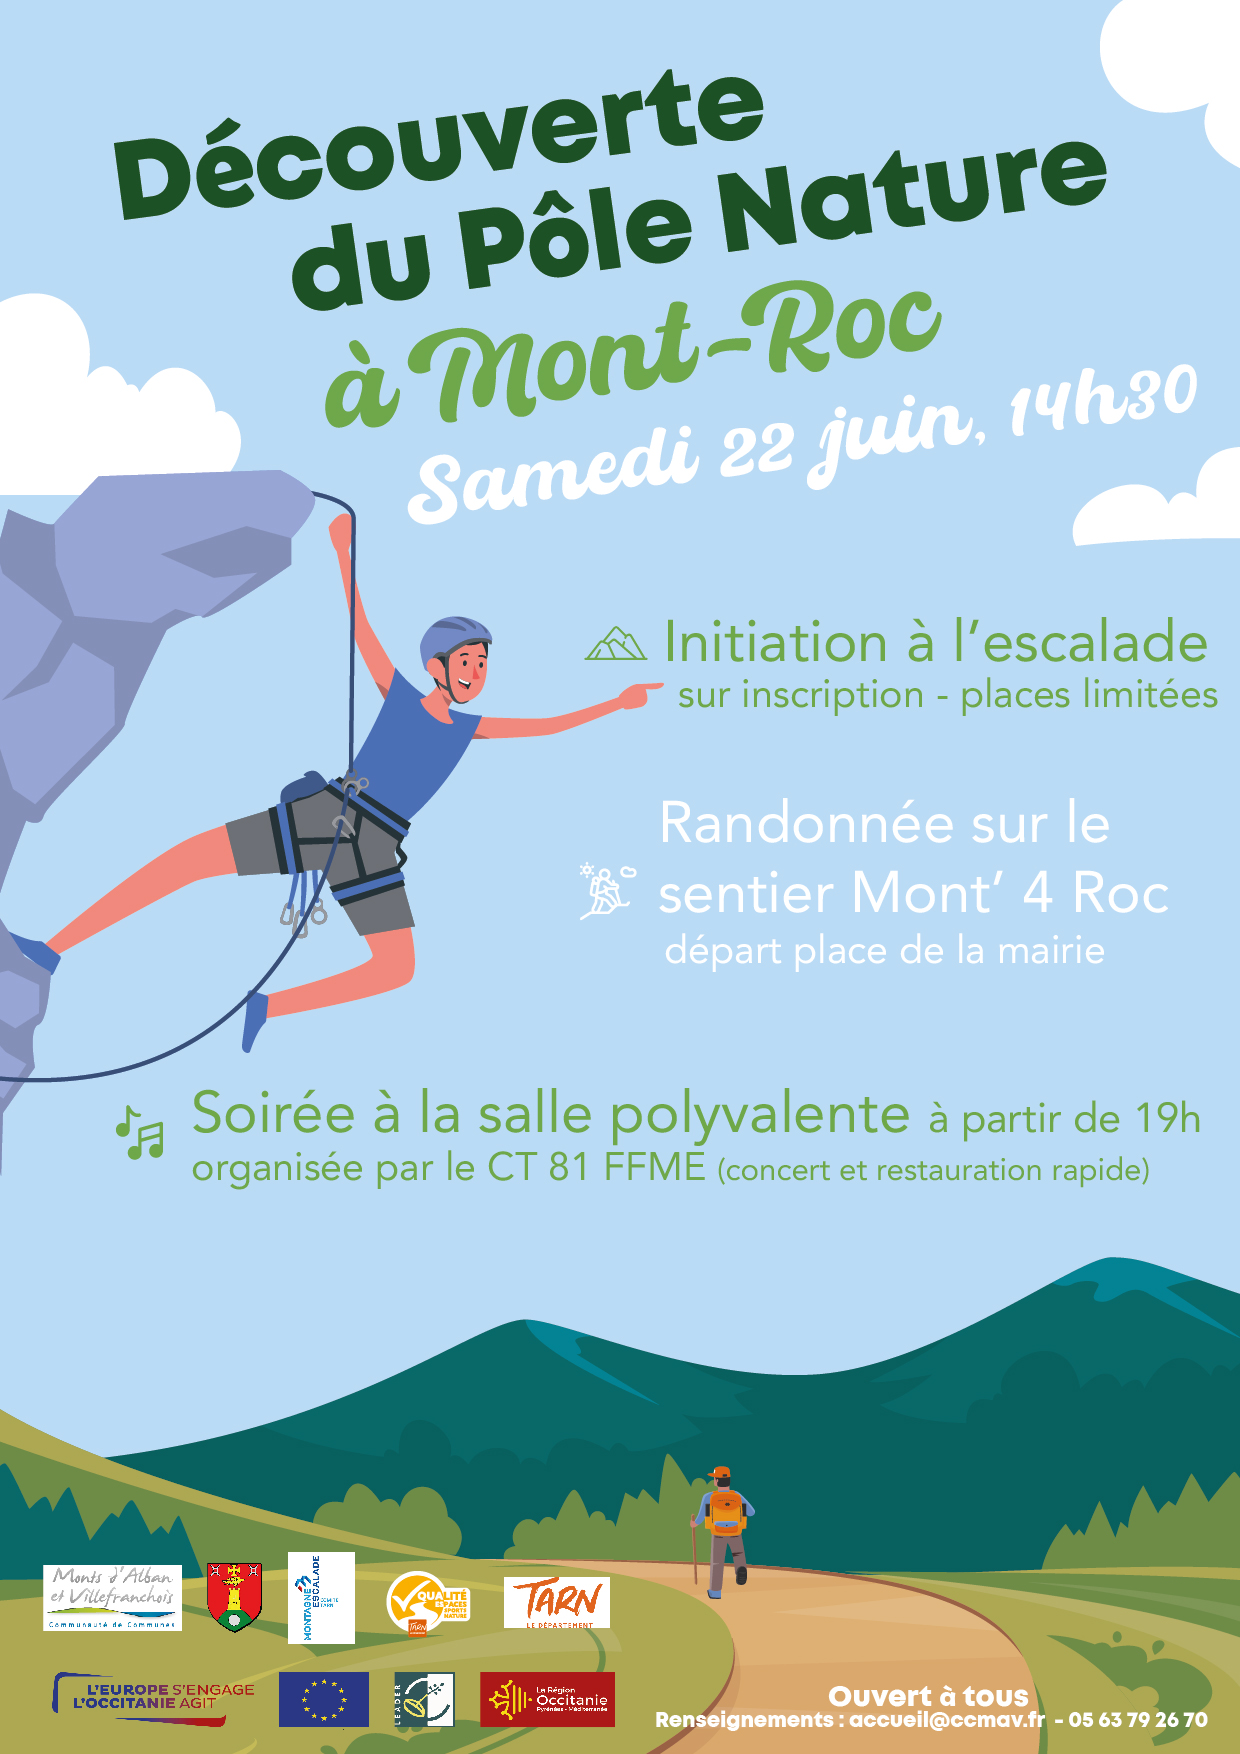 Découverte du pôle nature de Mont-Roc